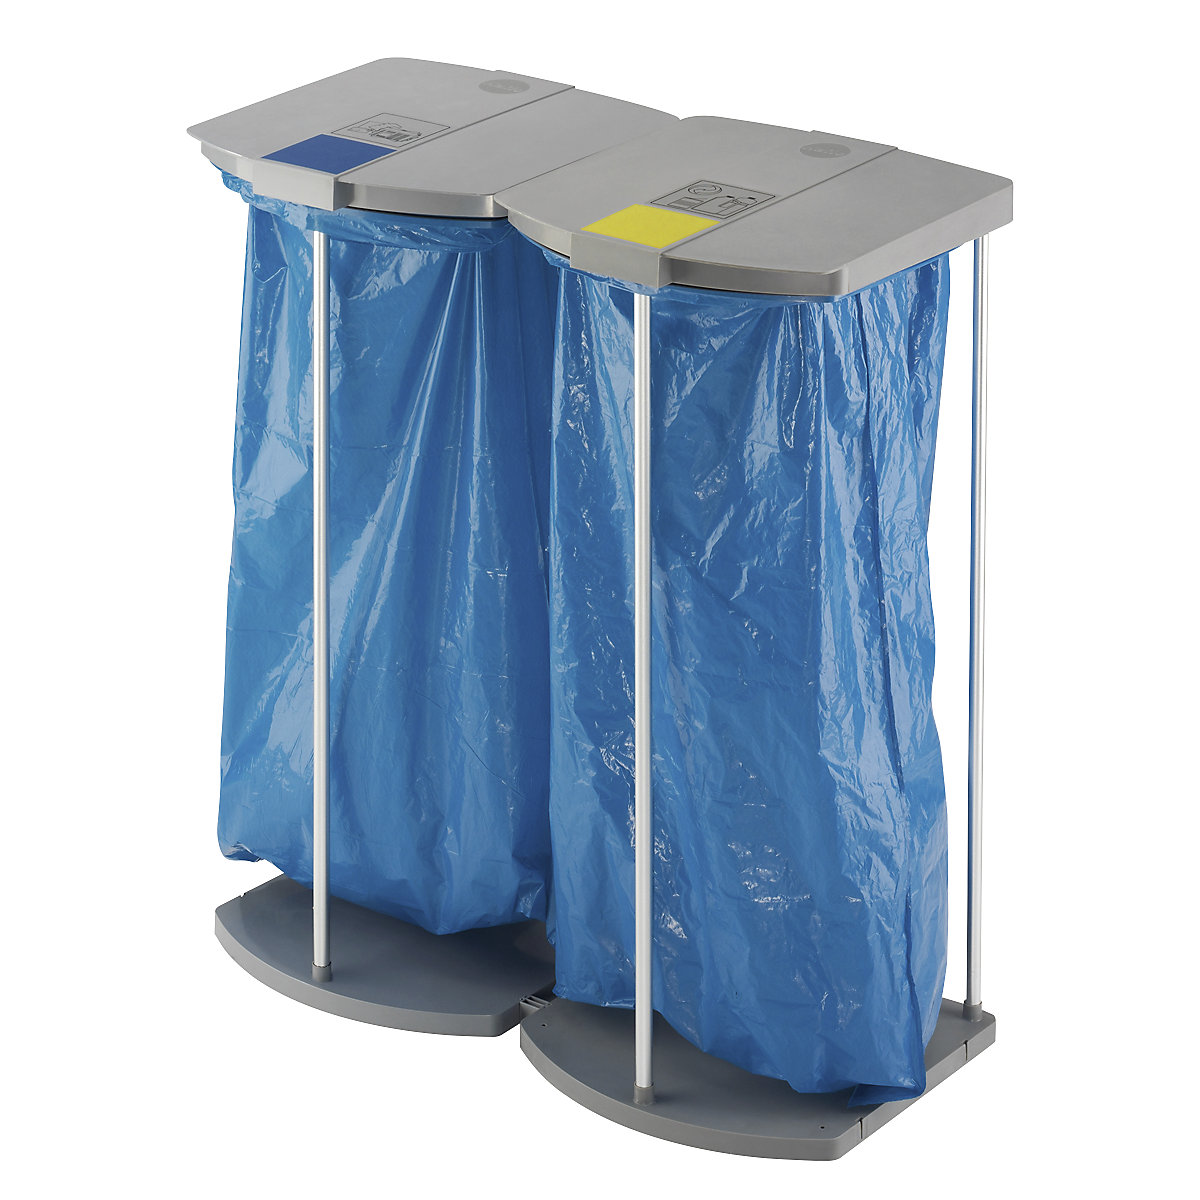 Stojan pro pytle na odpad s 250 modrými pytli na tříděný odpad – Hailo